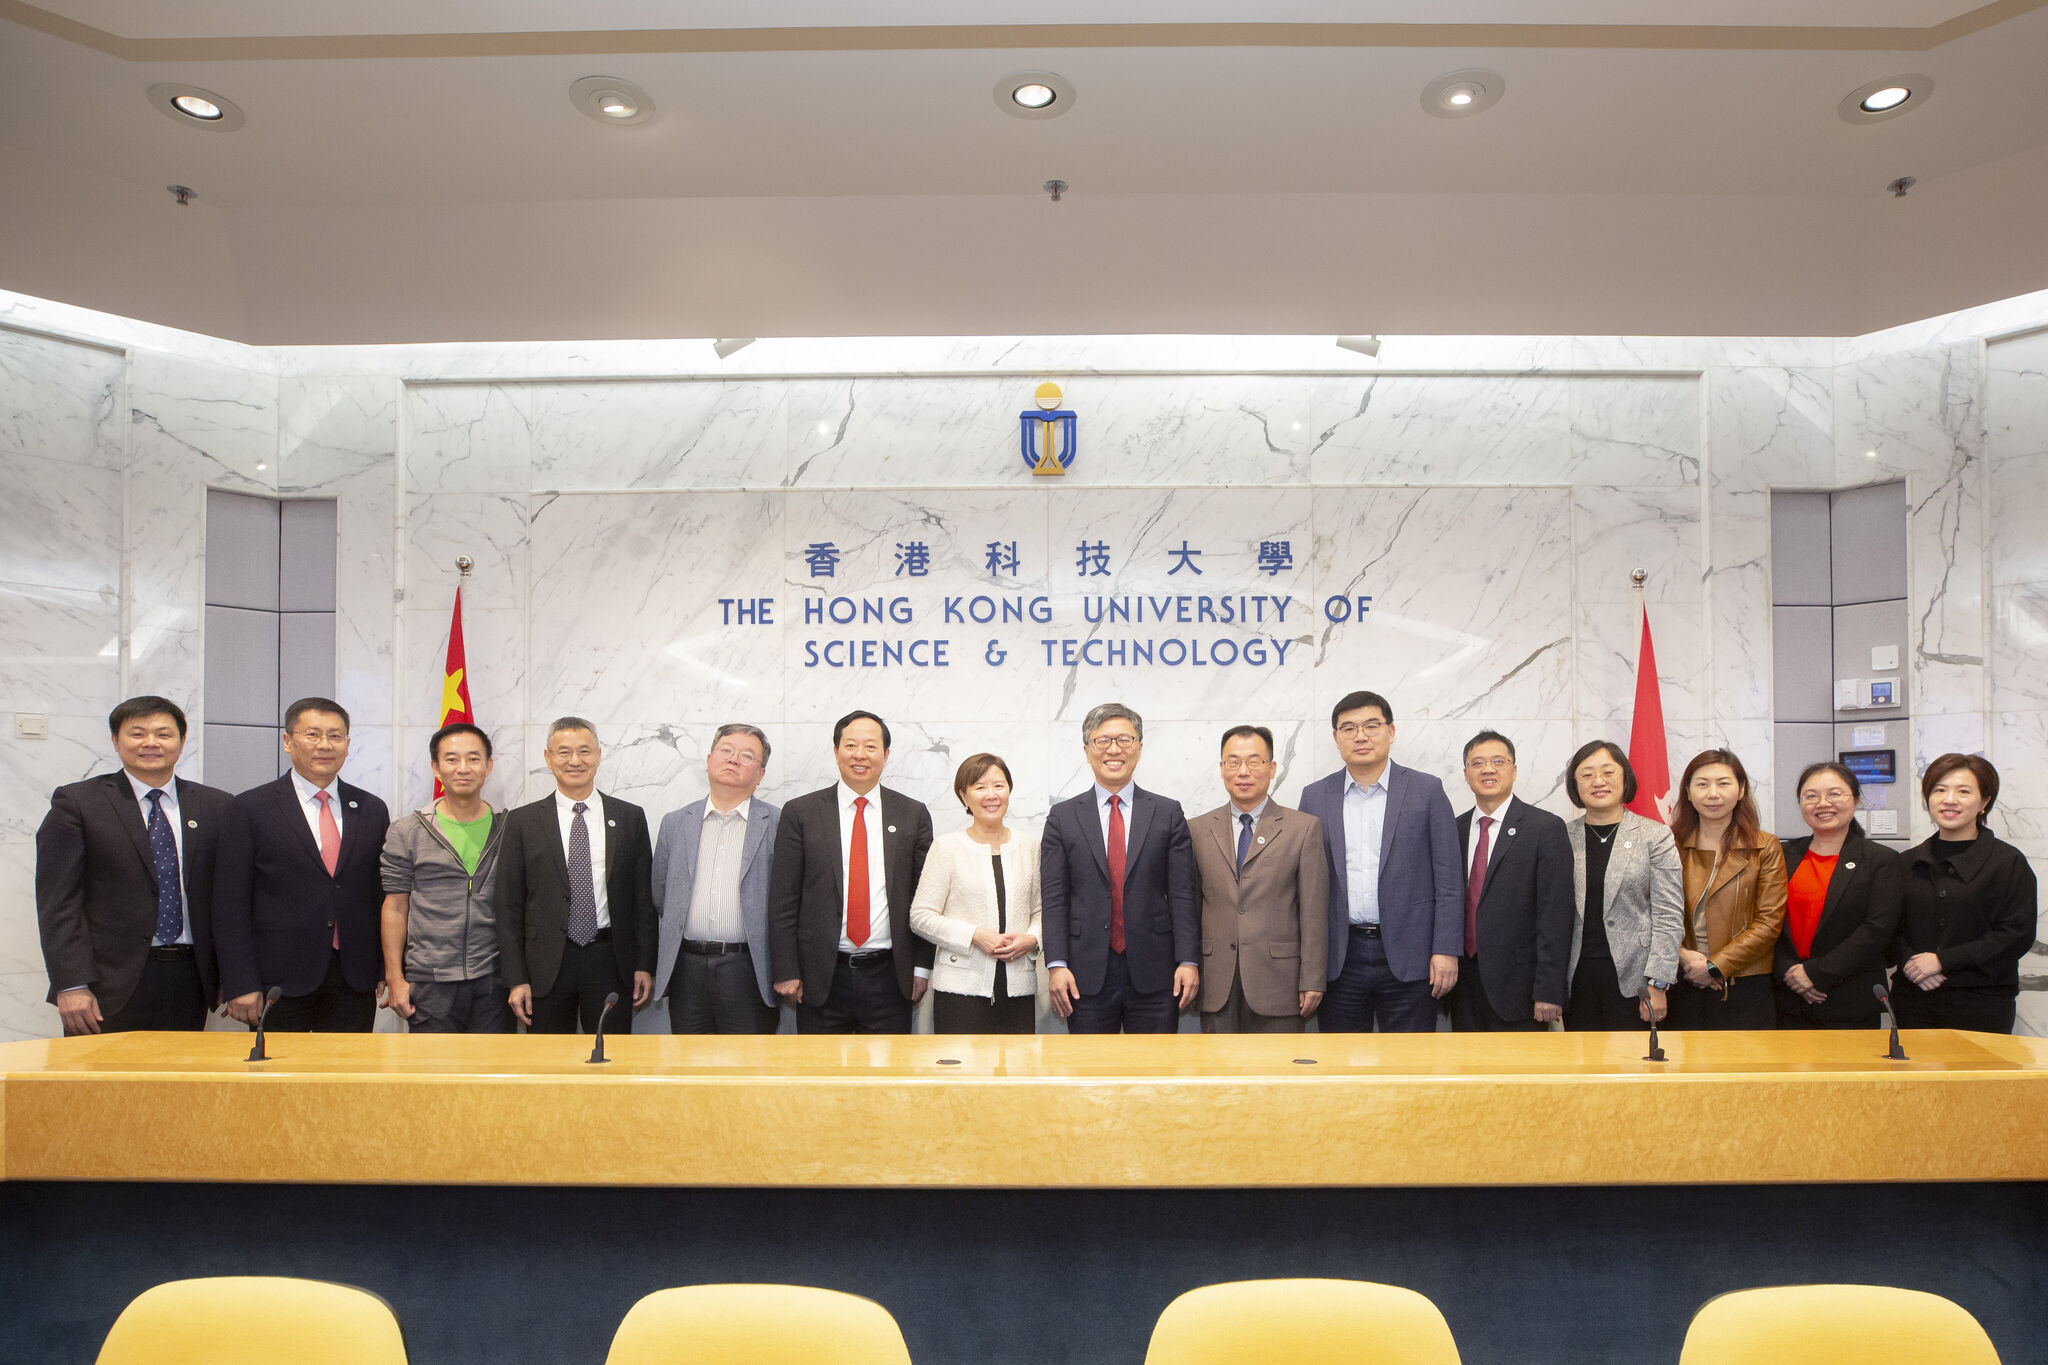 華南理工大學代表團與科大團隊合照。